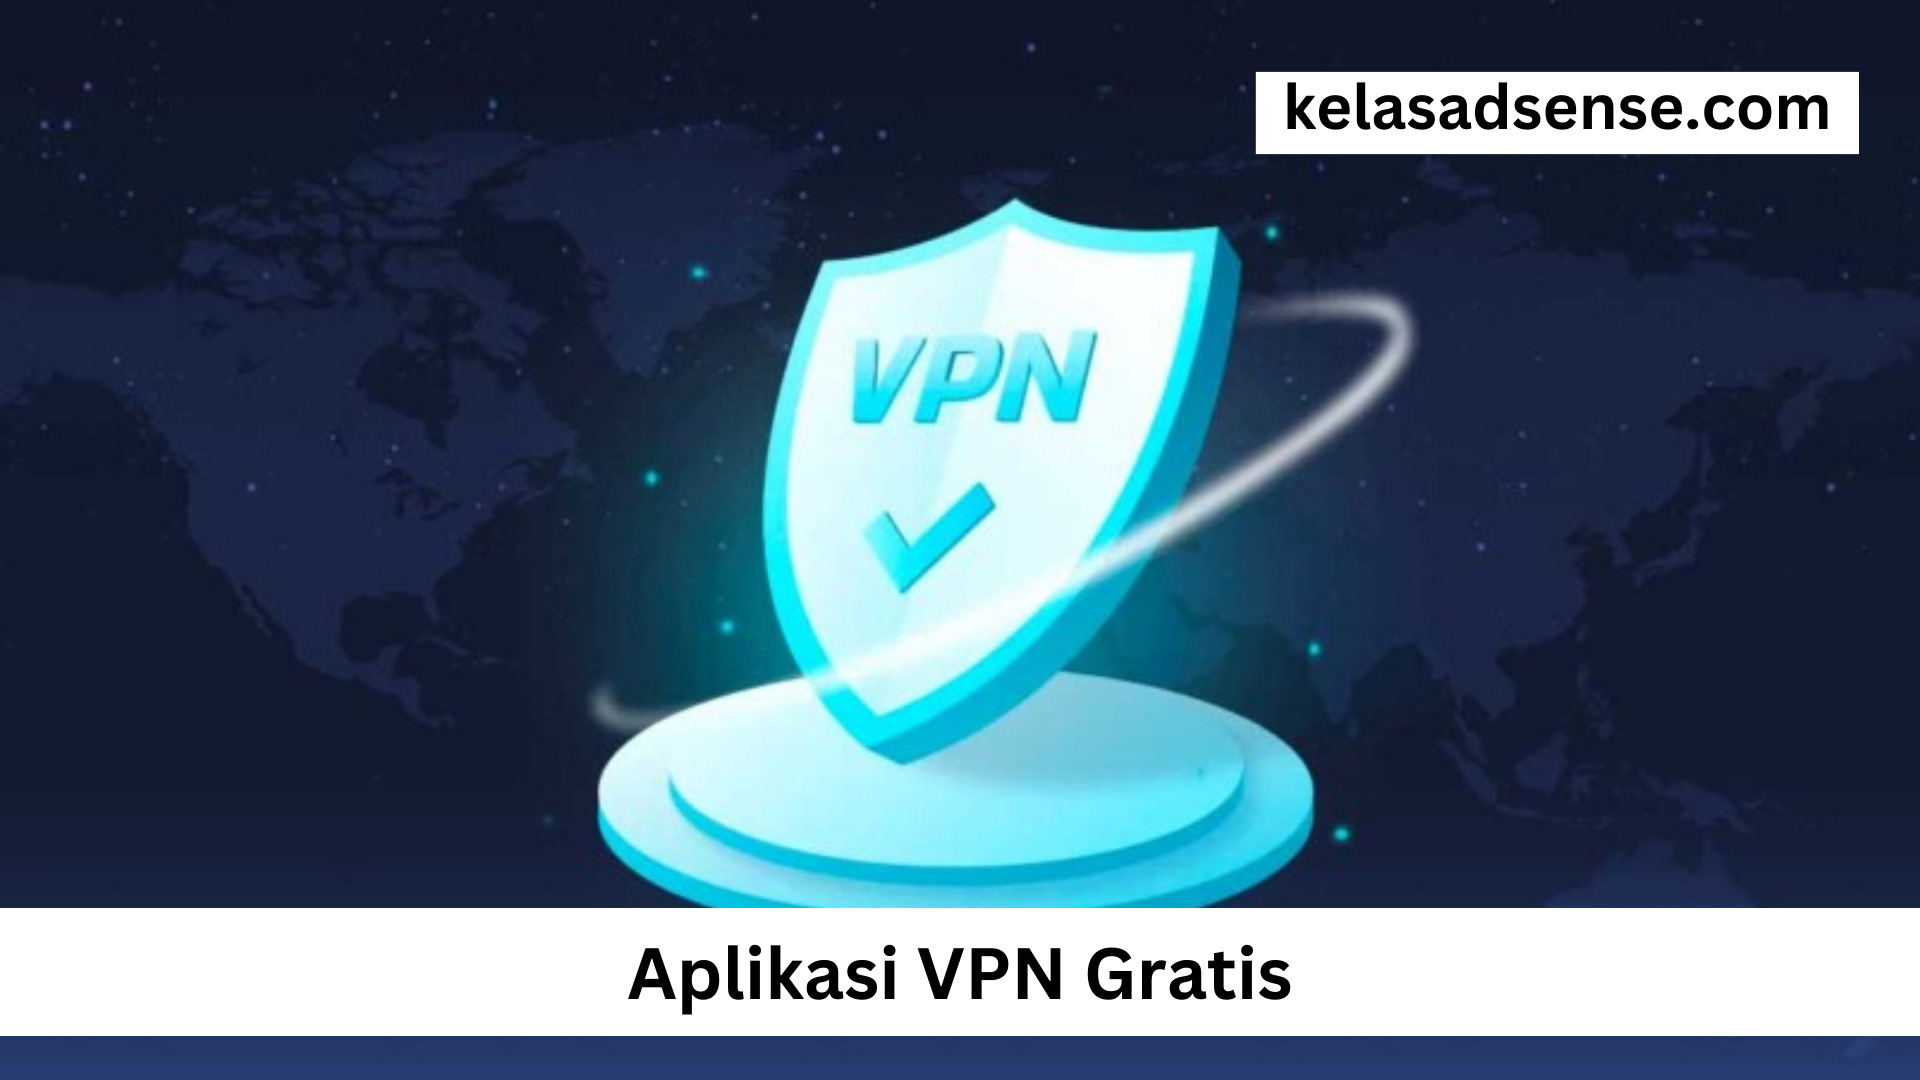 Aplikasi VPN Gratis